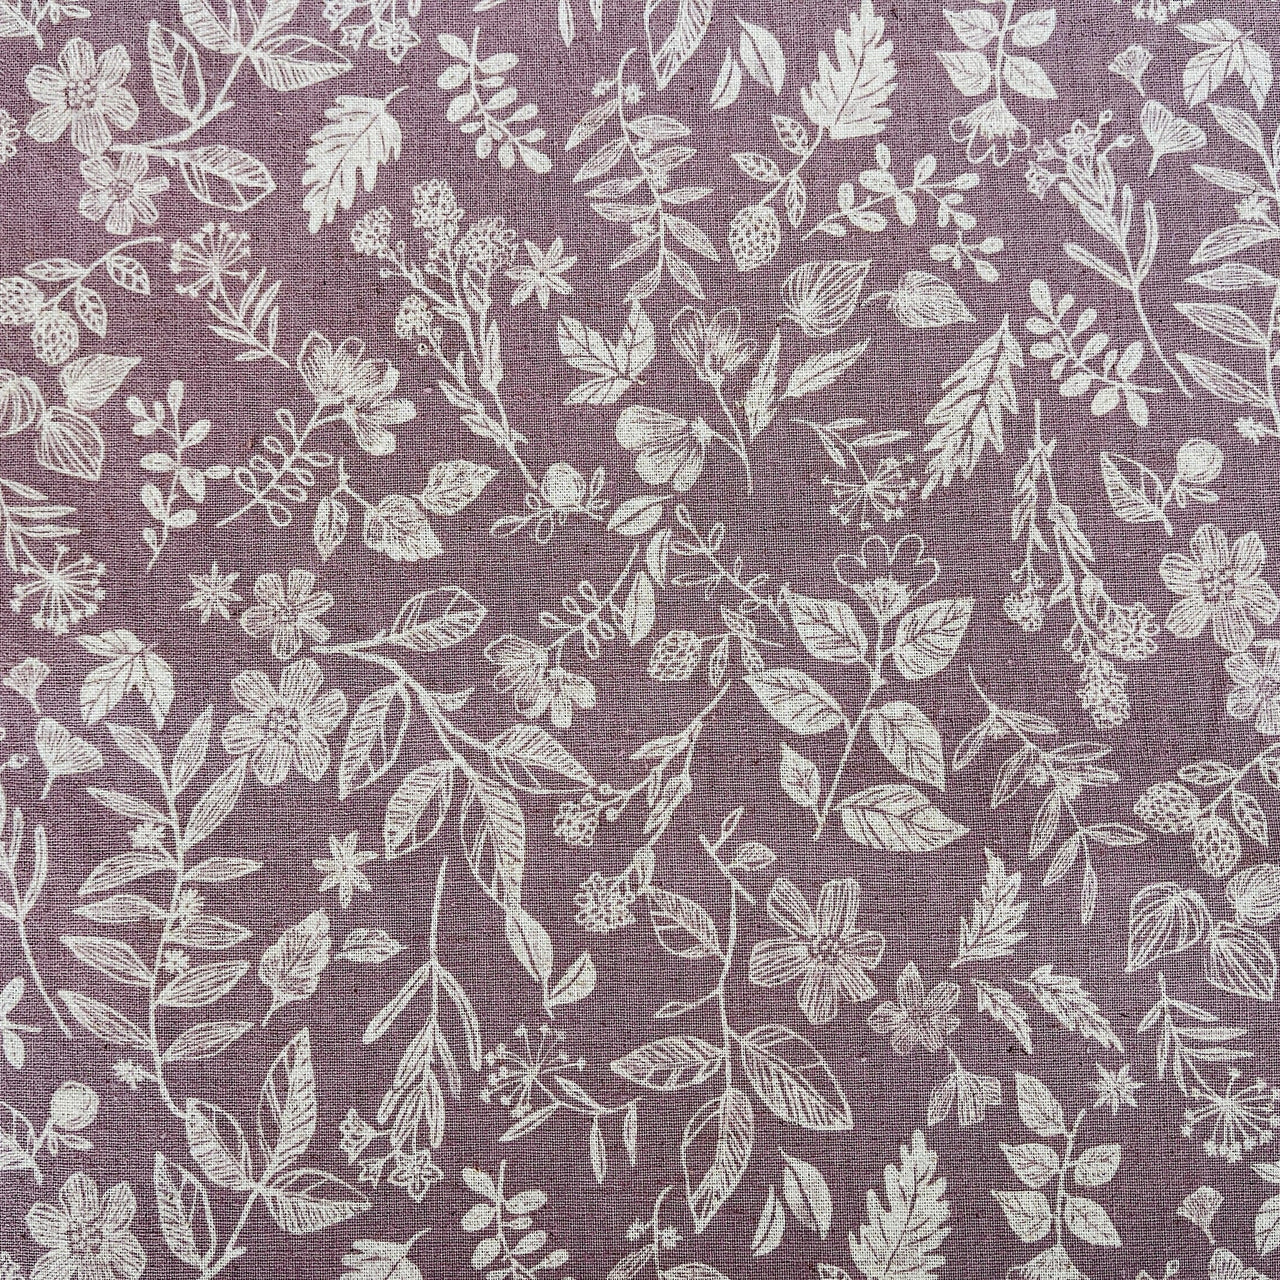 Kokka - Natural Garden - Cotton Linen Fabric - Sheeting - YGA-59010-1A